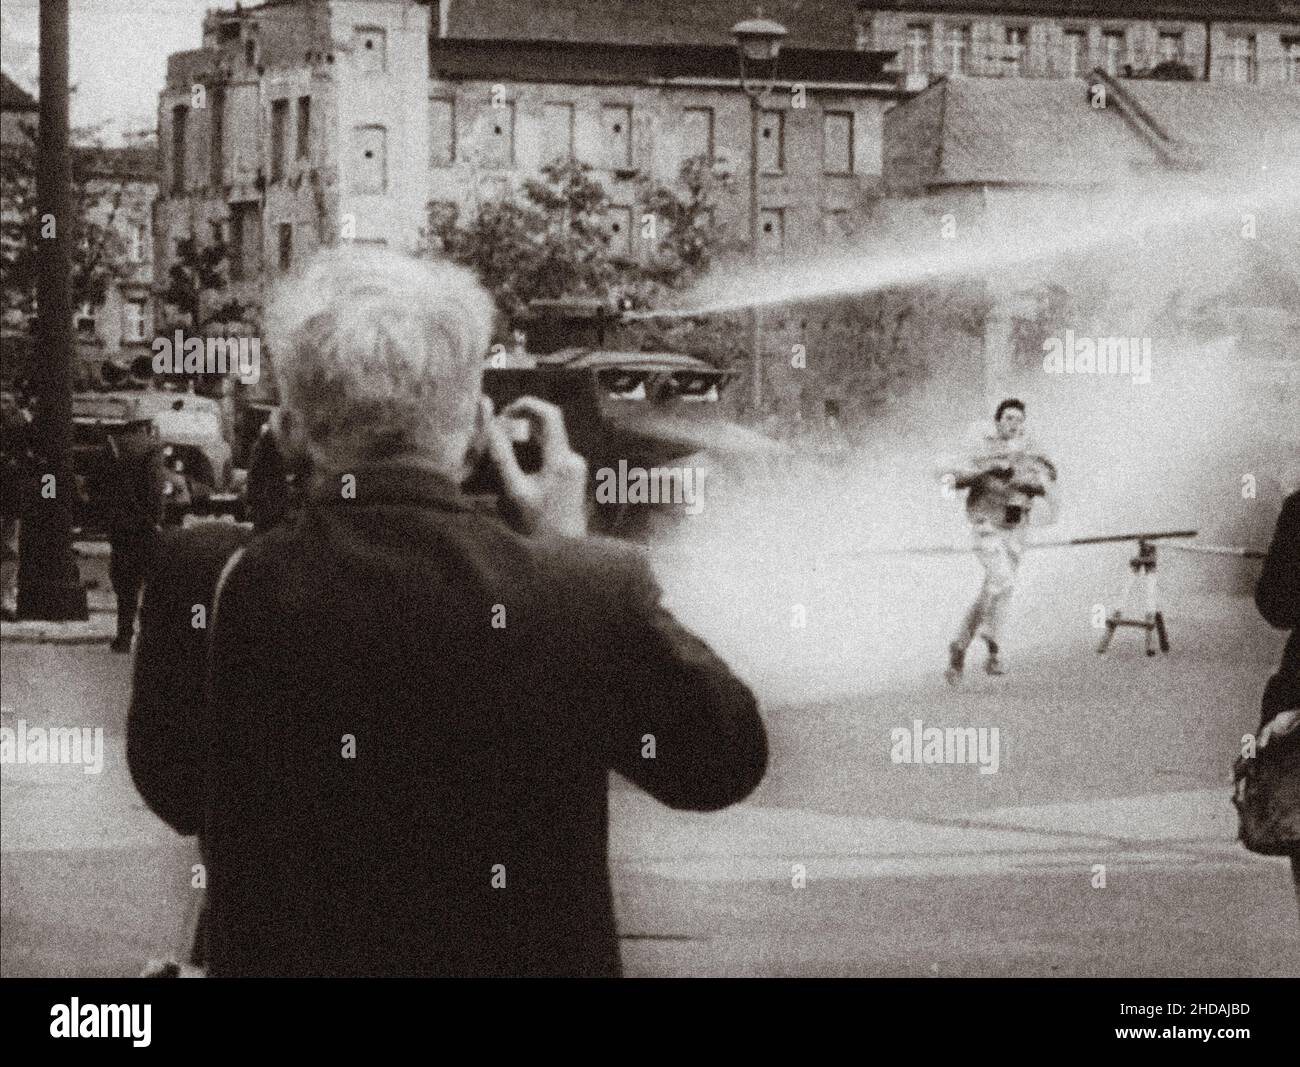 Crisis de Berlín de 1961. Serie de fotos de archivel representa la prohibición de viajar el 1961 de agosto entre Berlín oriental y Berlín occidental y muestra la construcción de barricadas Foto de stock